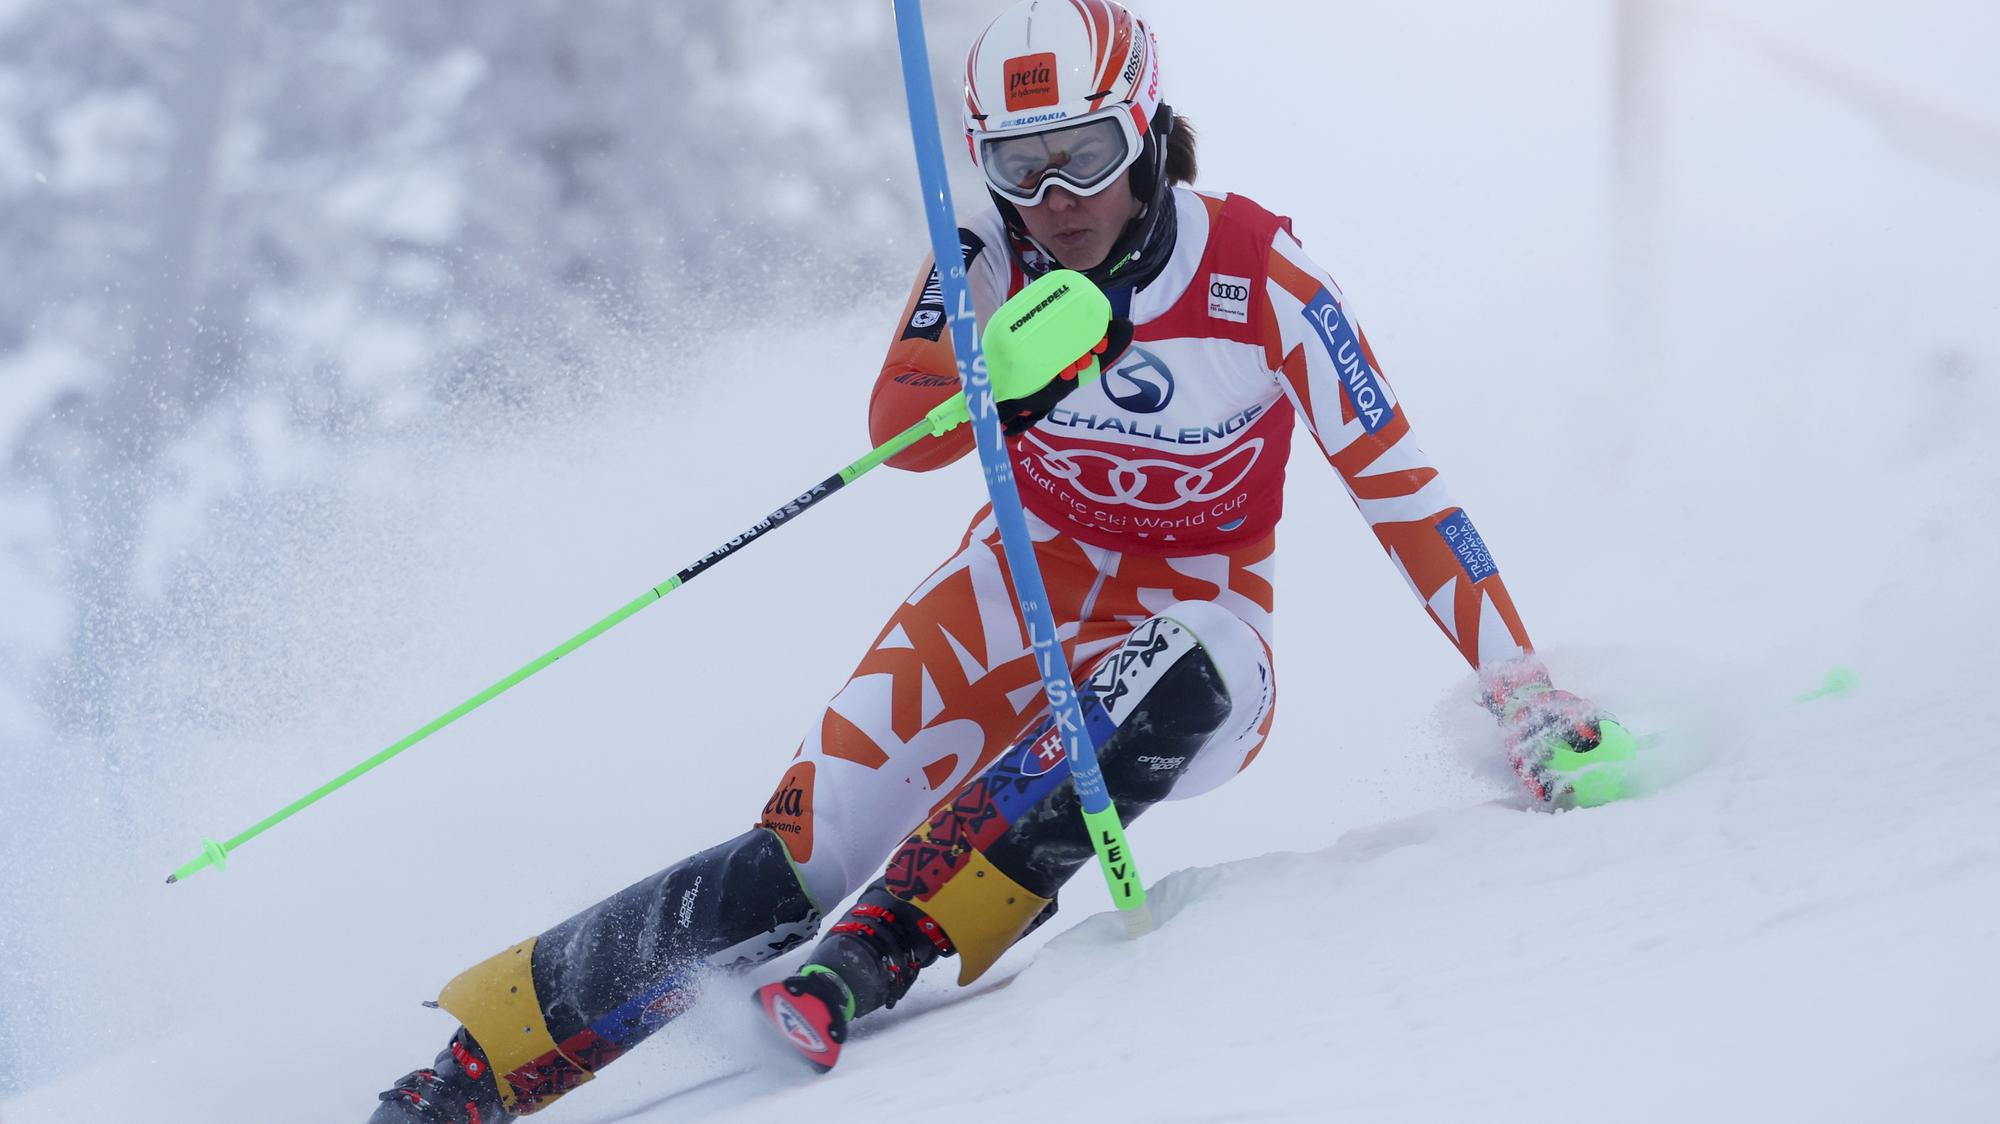 LIVE : Petra Vlhová dnes 2 kolo - slalom / Levi | Šport.sk